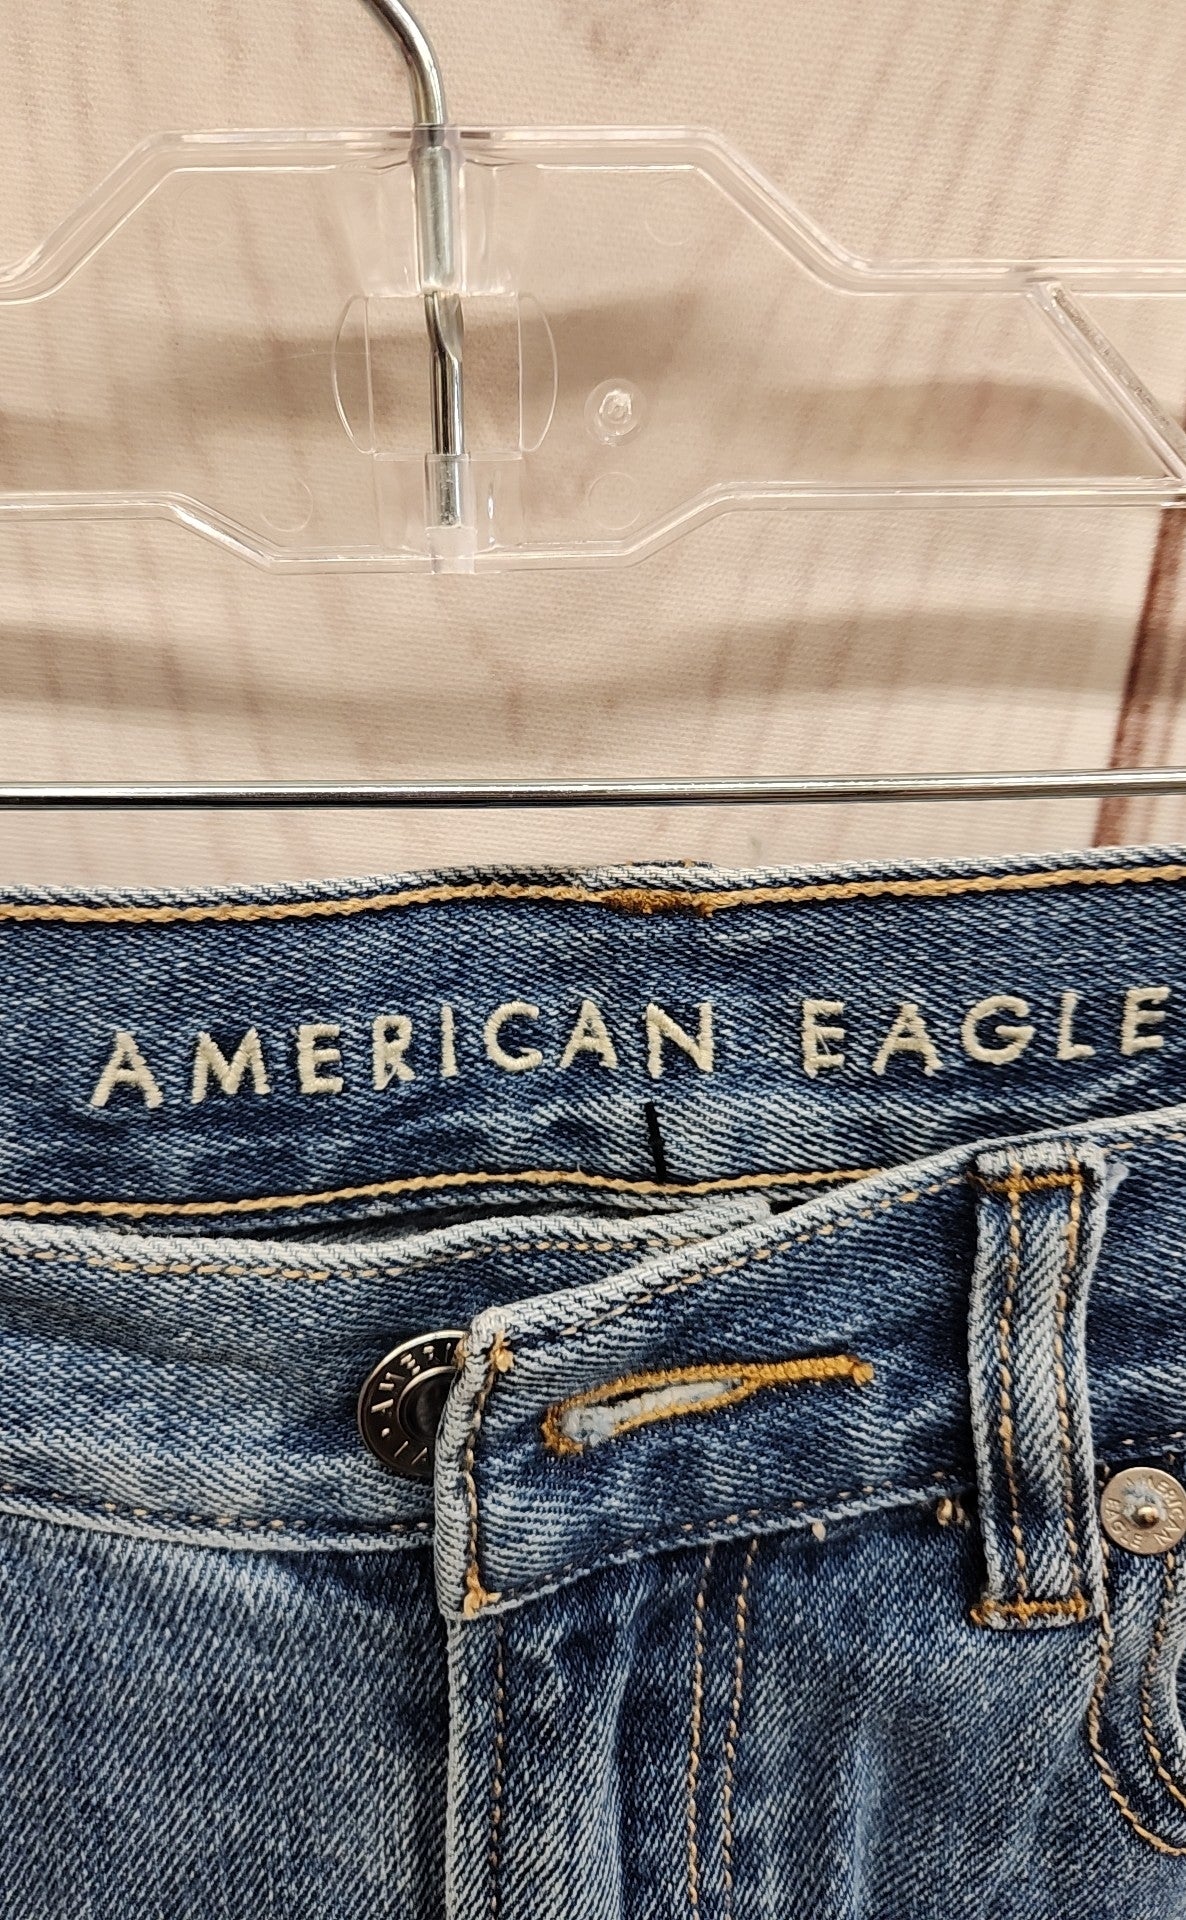 American Eagle Women's Size 29 (7-8) Mom Jean Blue Jeans